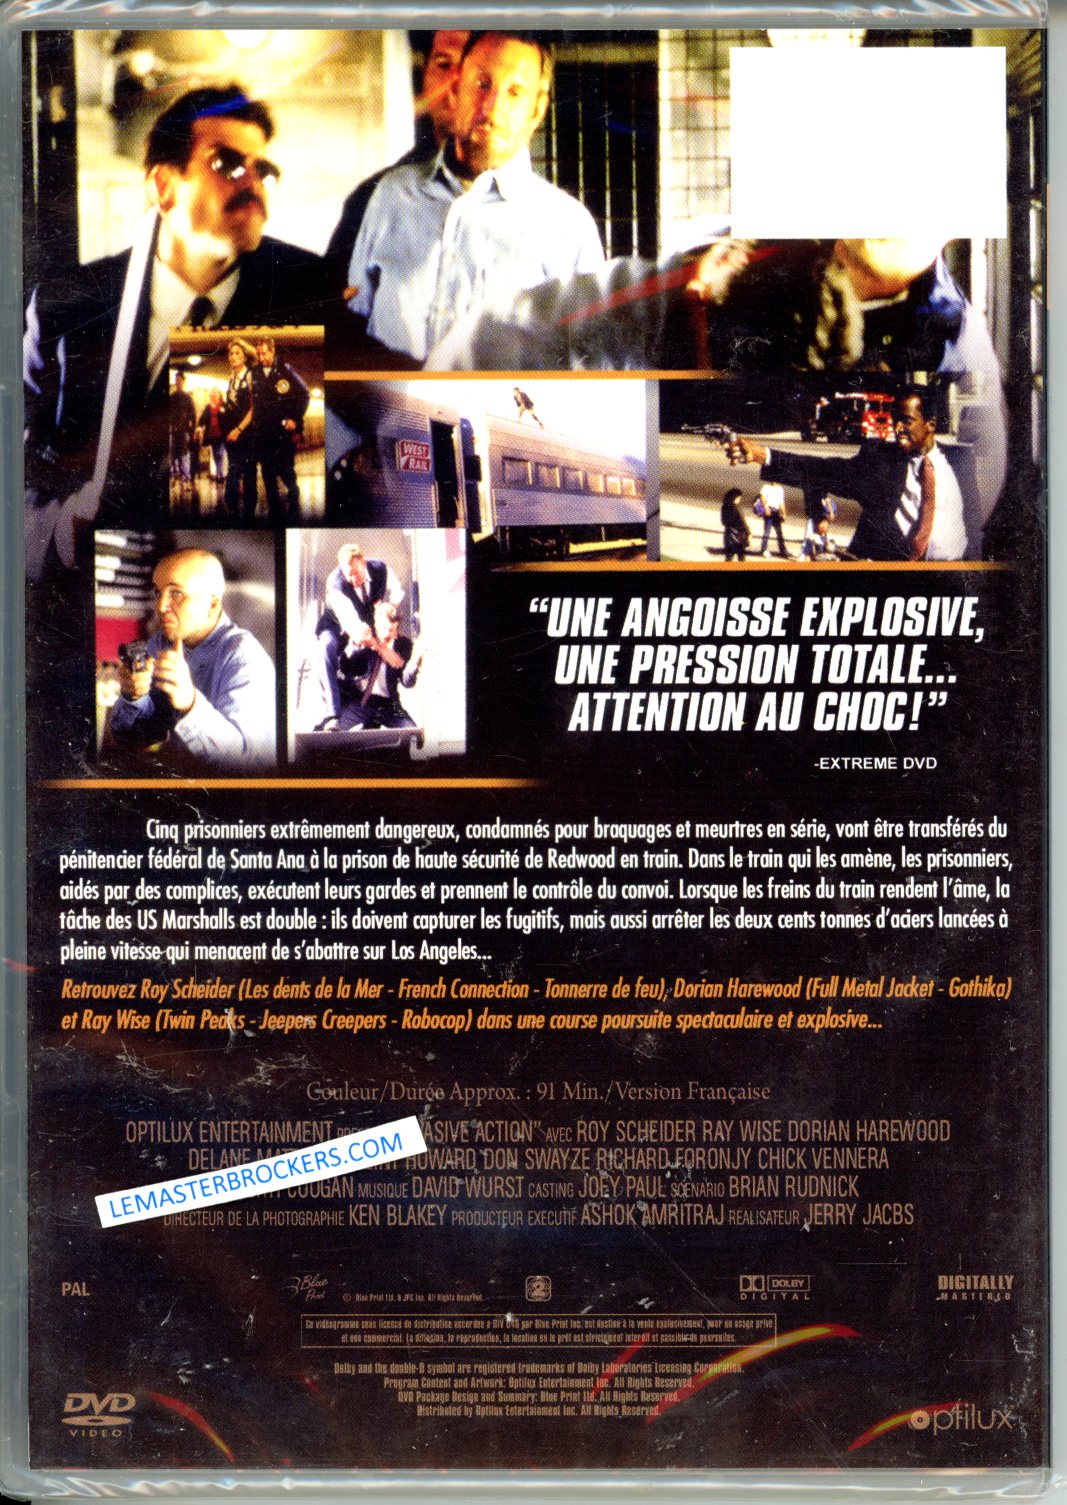 EVASIVE ACTION - ROY SCHEIDER DVD